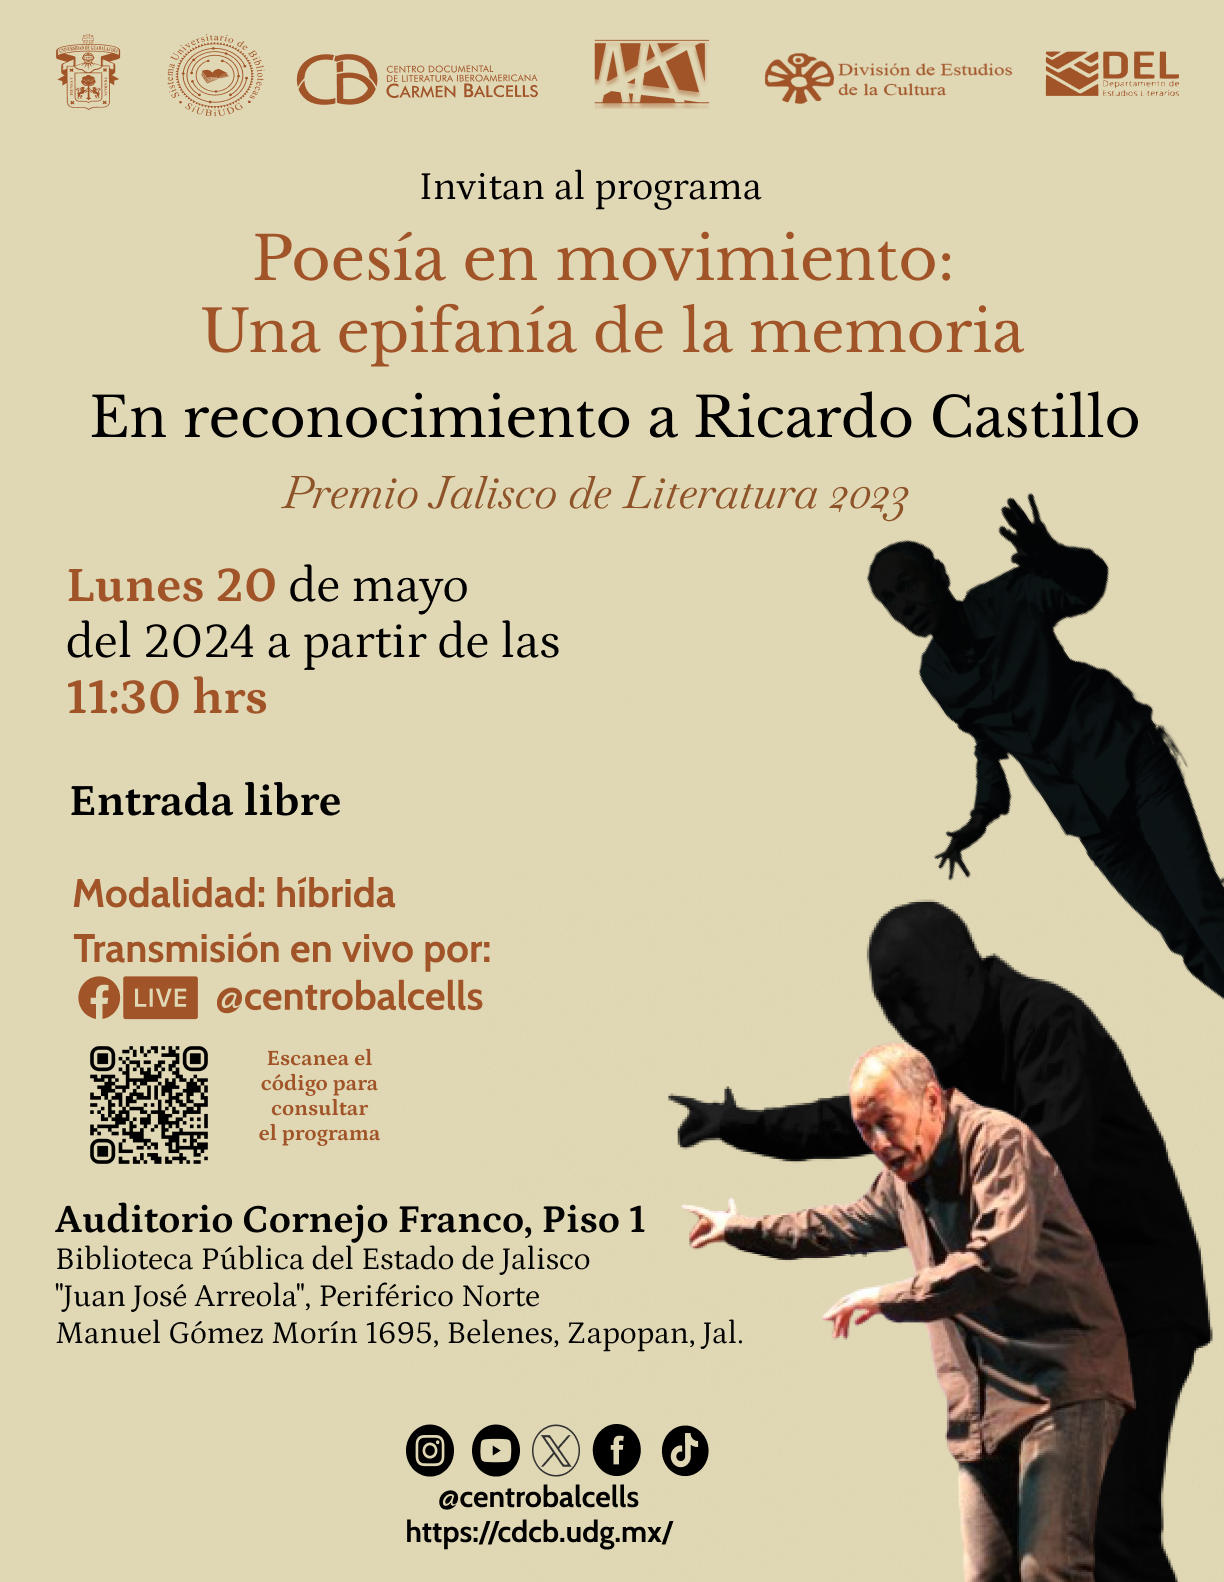 Poesía en movimiento: una epifanía de la memoria, en reconocimiento a Ricardo Castillo (Premio Jalisco de Literatura 2023)